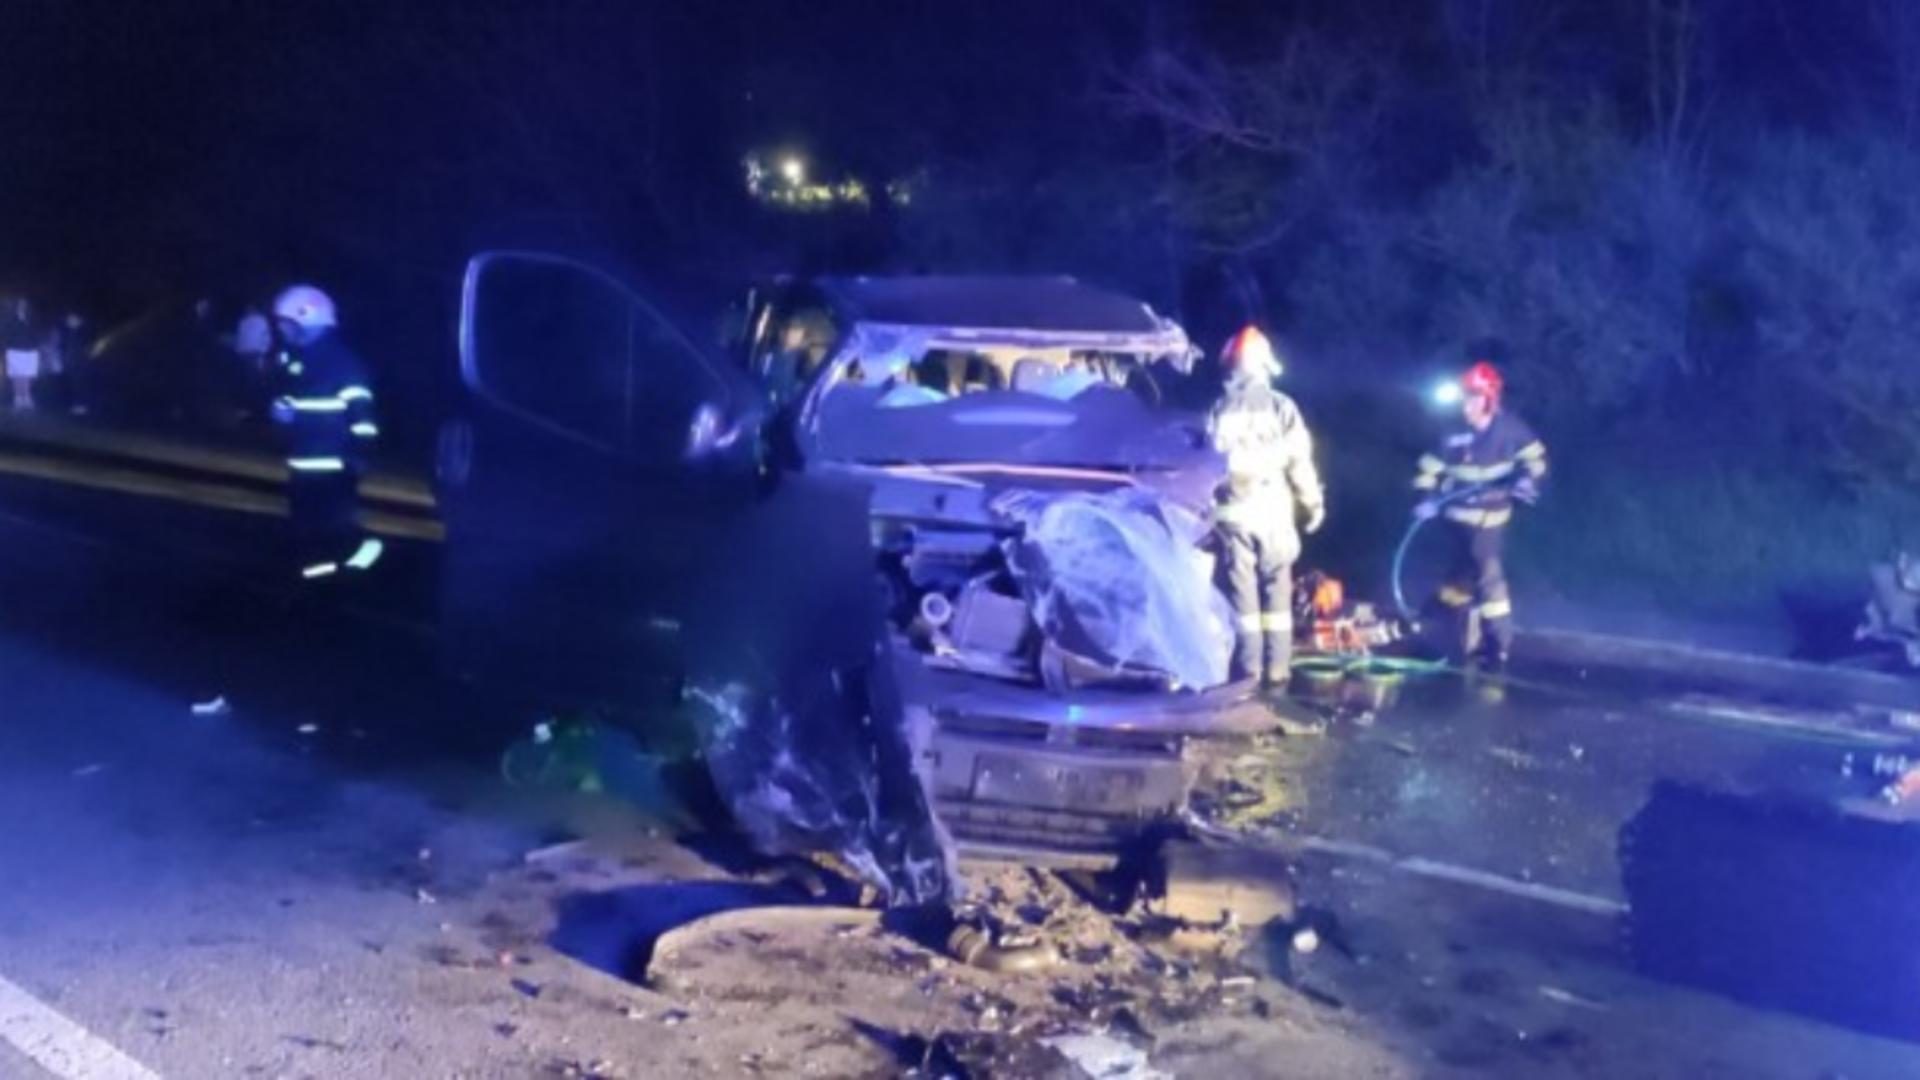 Val de accidente grave pe șoselele din România: trei șoferi au ajuns în stare gravă la spital